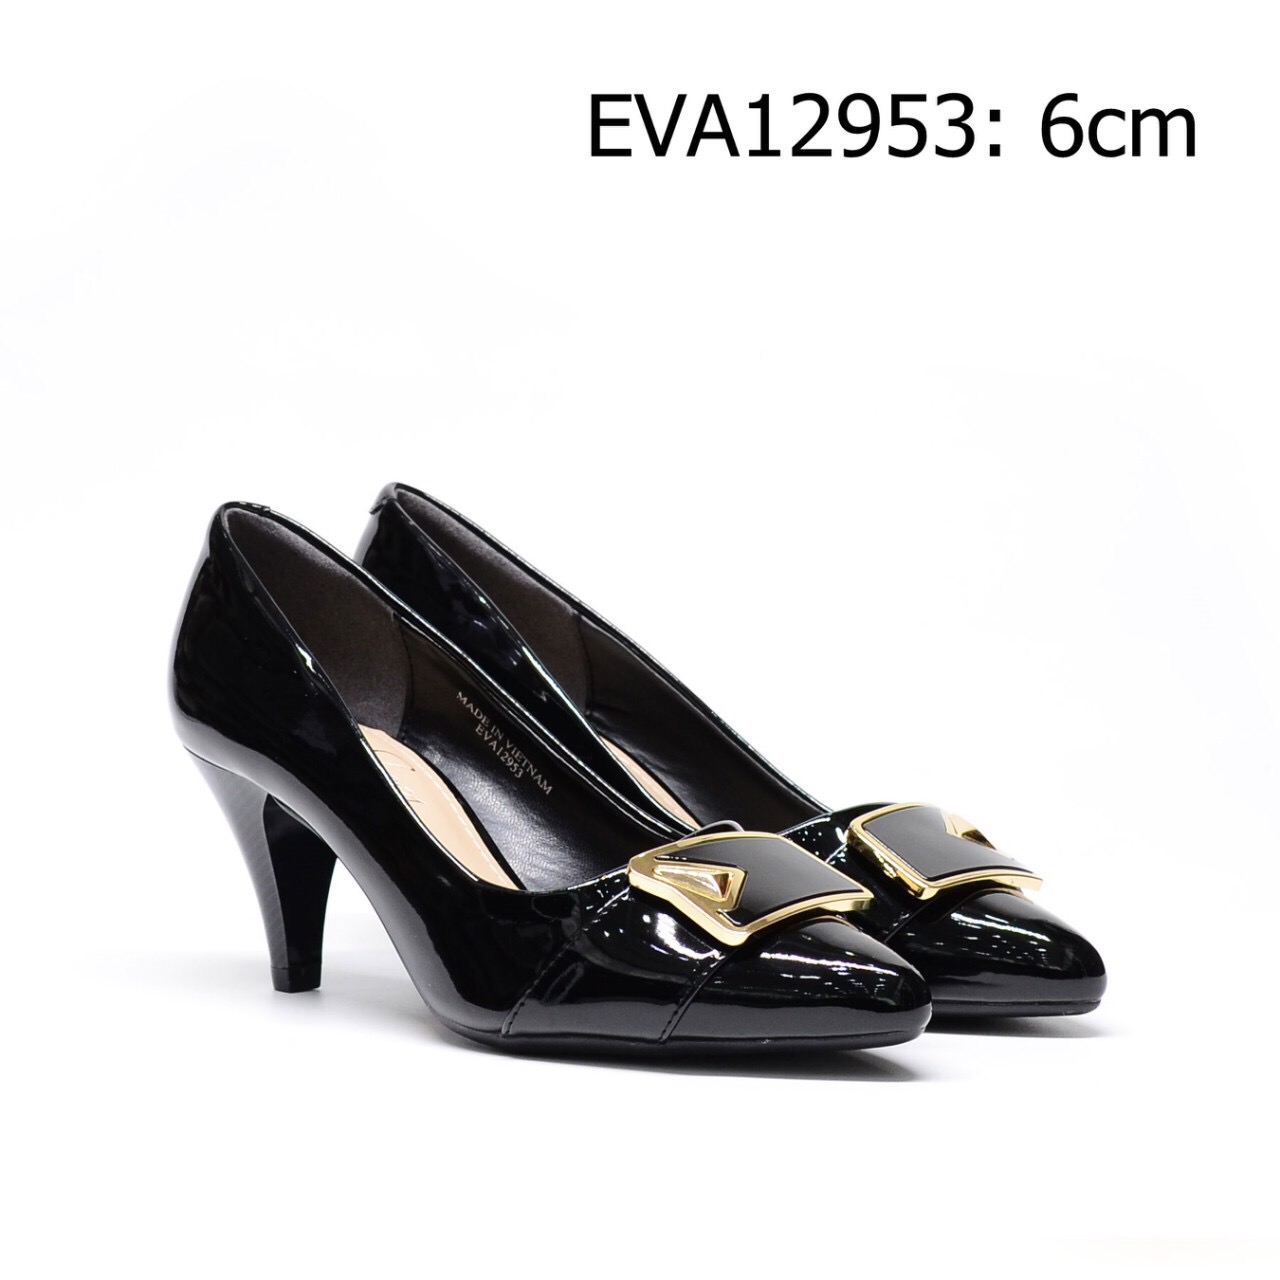 Giày cao gót công sở sang trọng EVA12953 nữ tính, thanh lịch